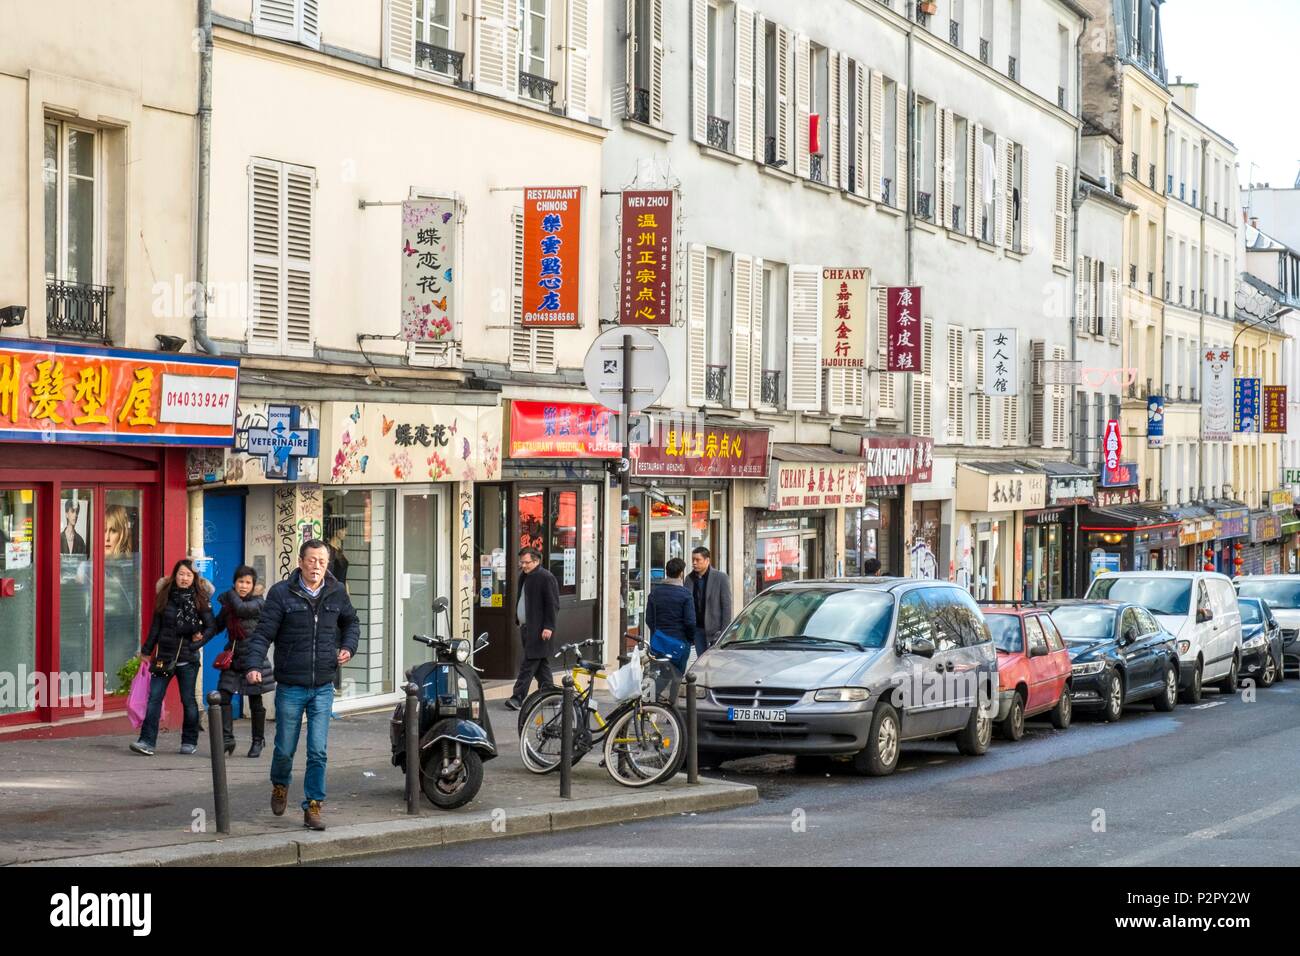 France, Paris, Rue de Belleville, the Chinatown of Belleville Stock Photo -  Alamy